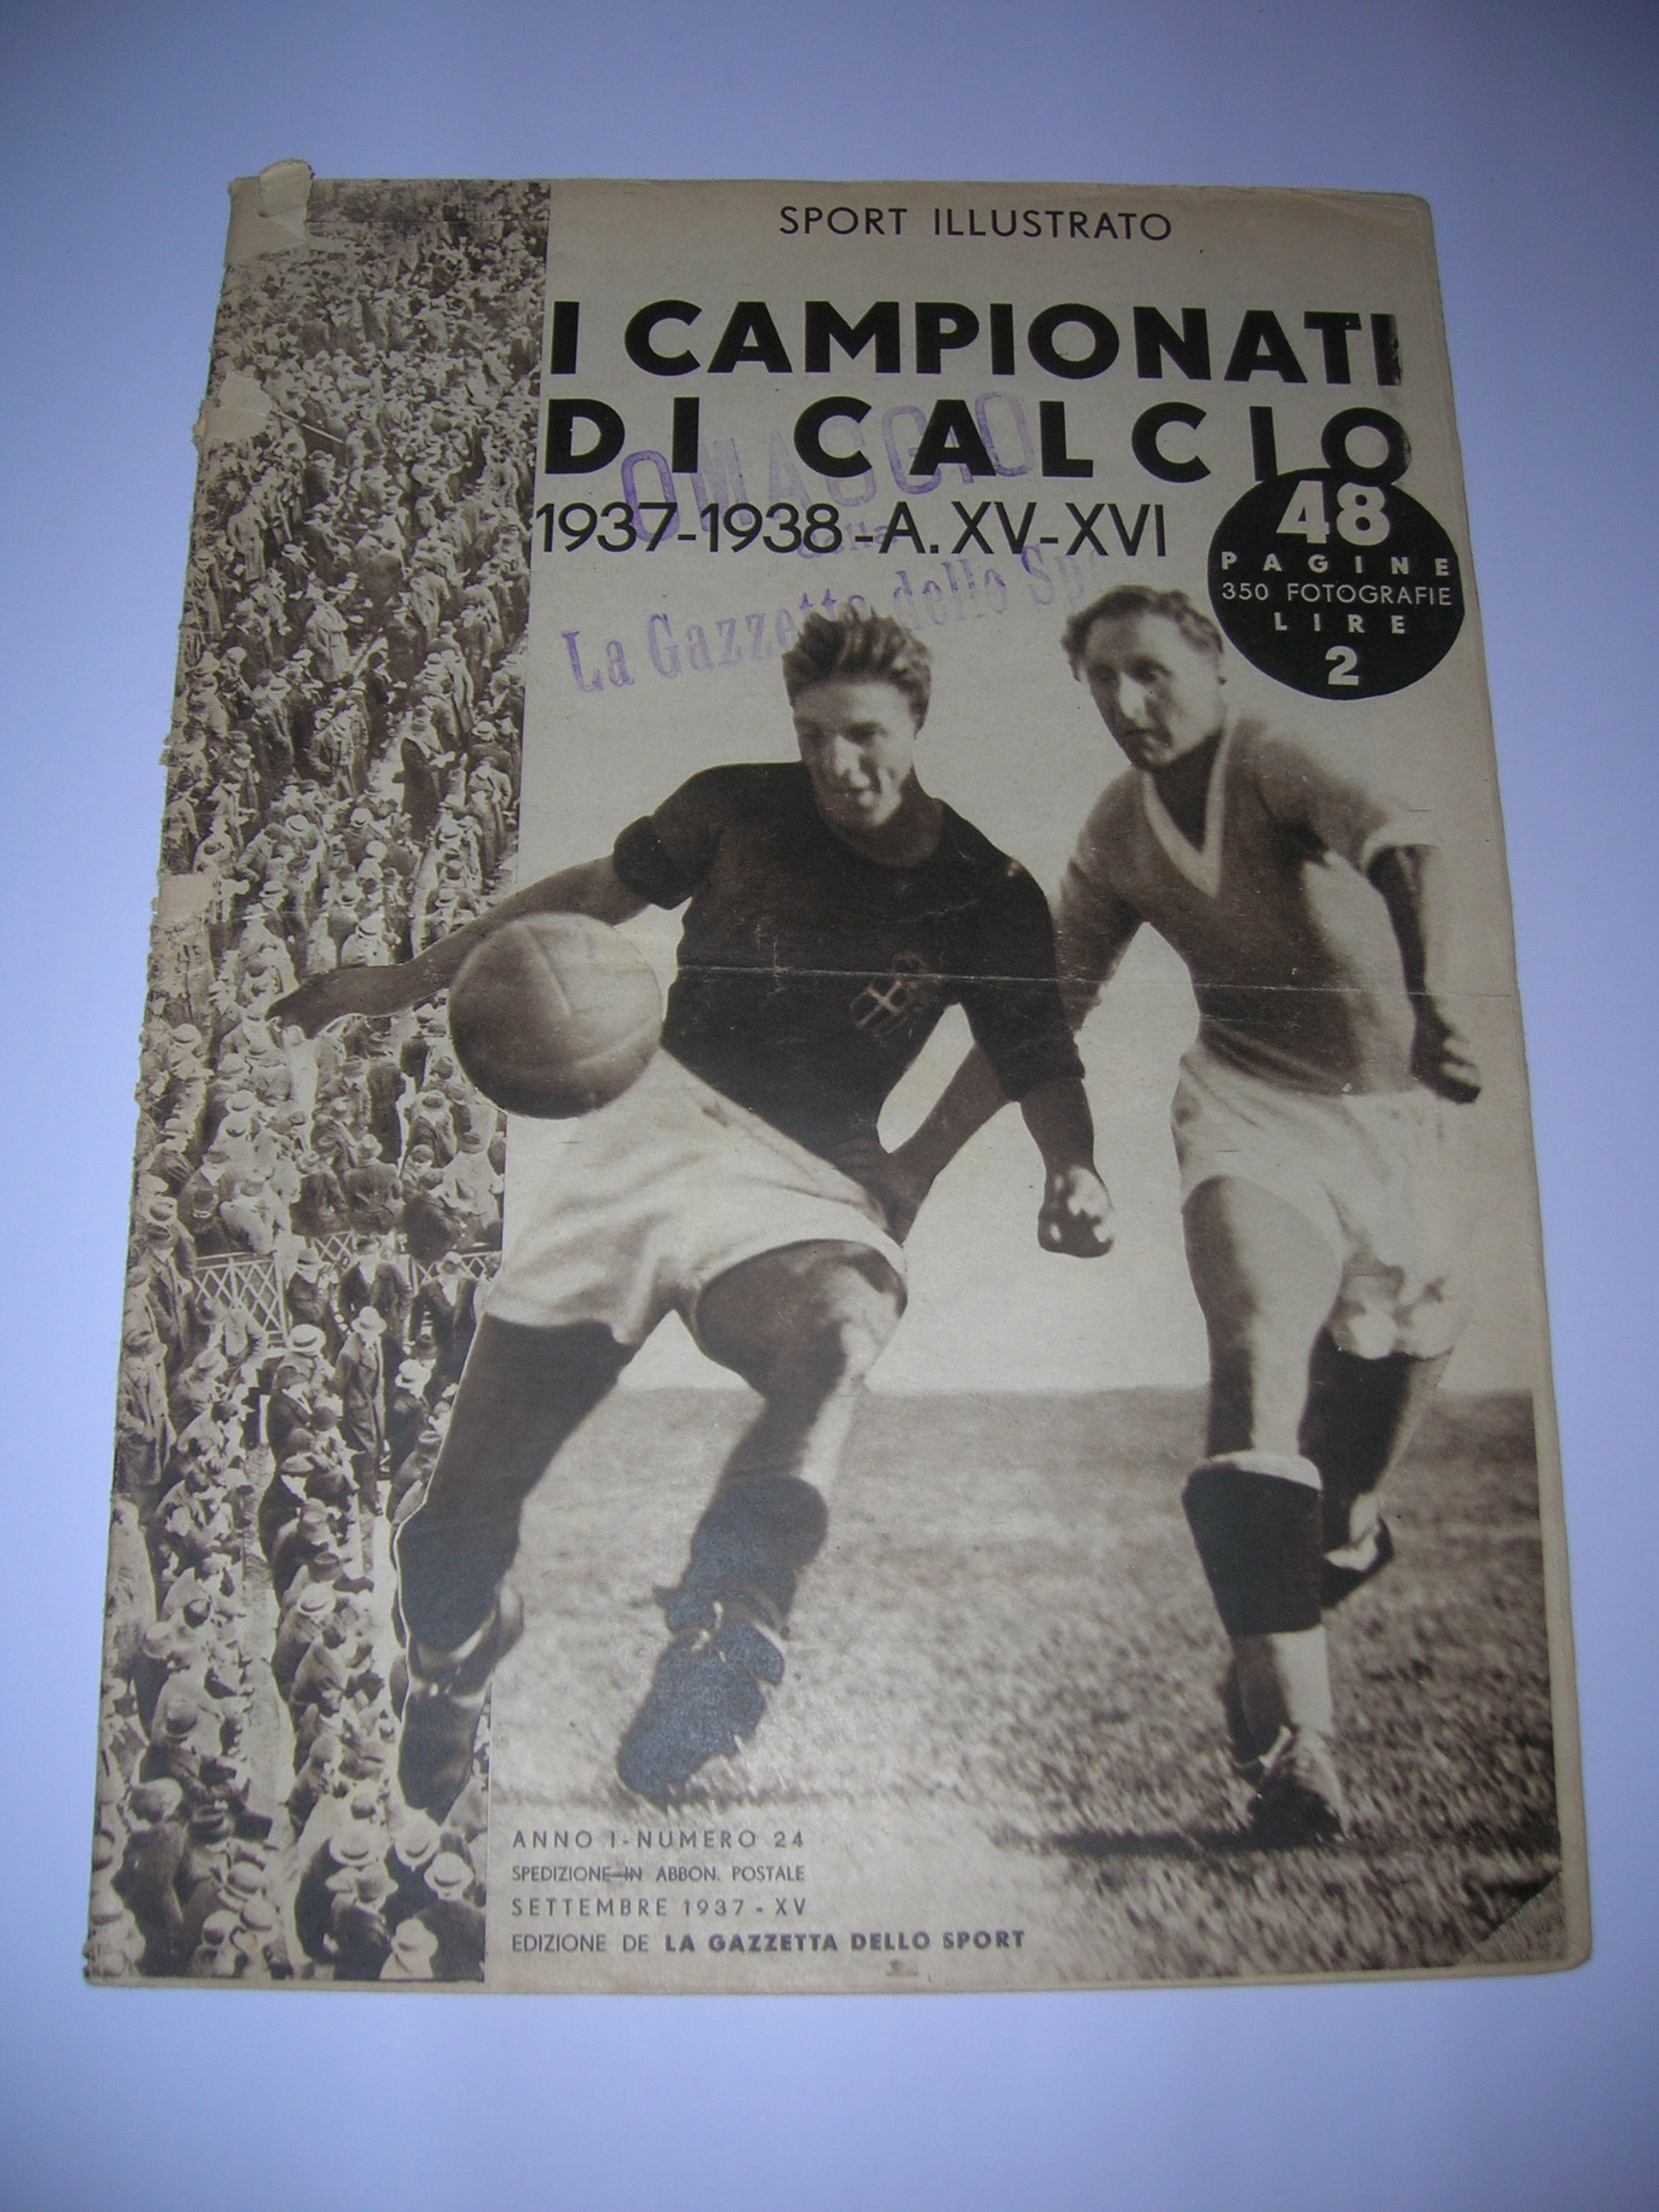 Sport Illustrato  1937-38  i campionati di calcio